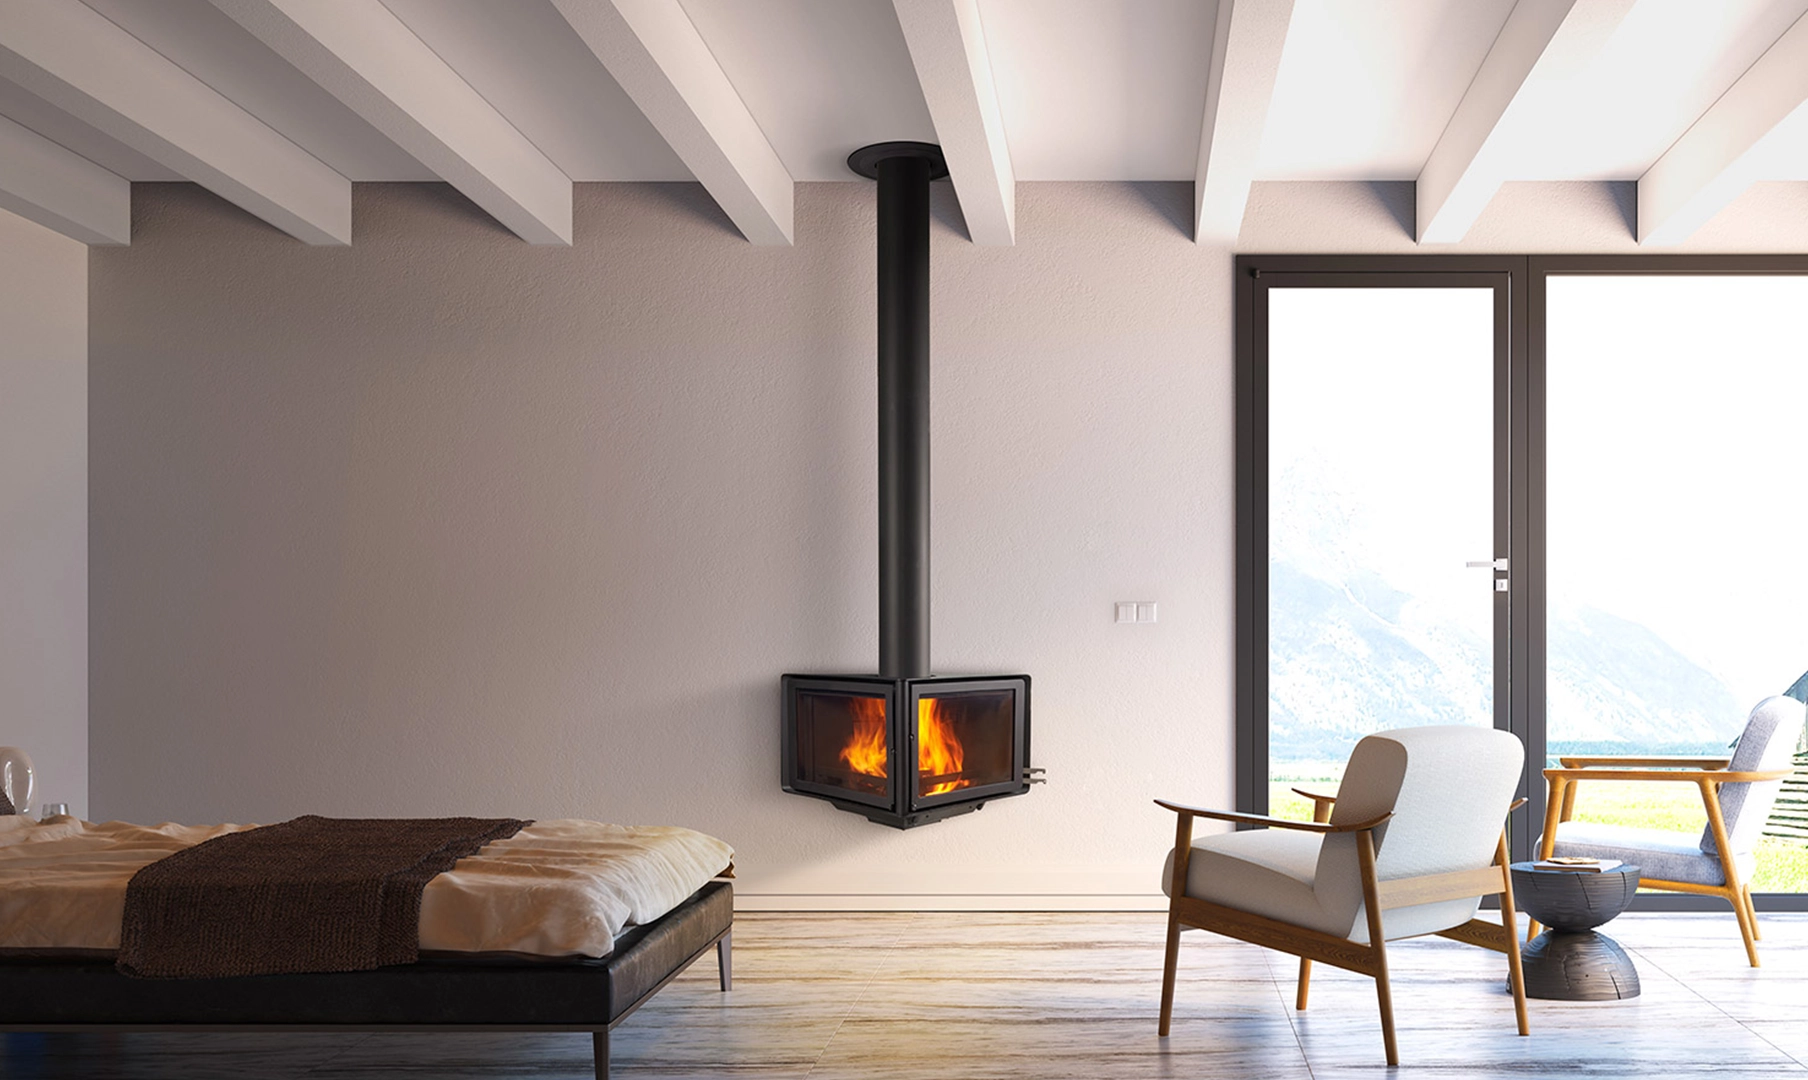 Chimenea Vertex de Rocal negra, de forma triangular, con fuego dentro, en pared de una cálida habitación con ventanal y vistas a la montaña 